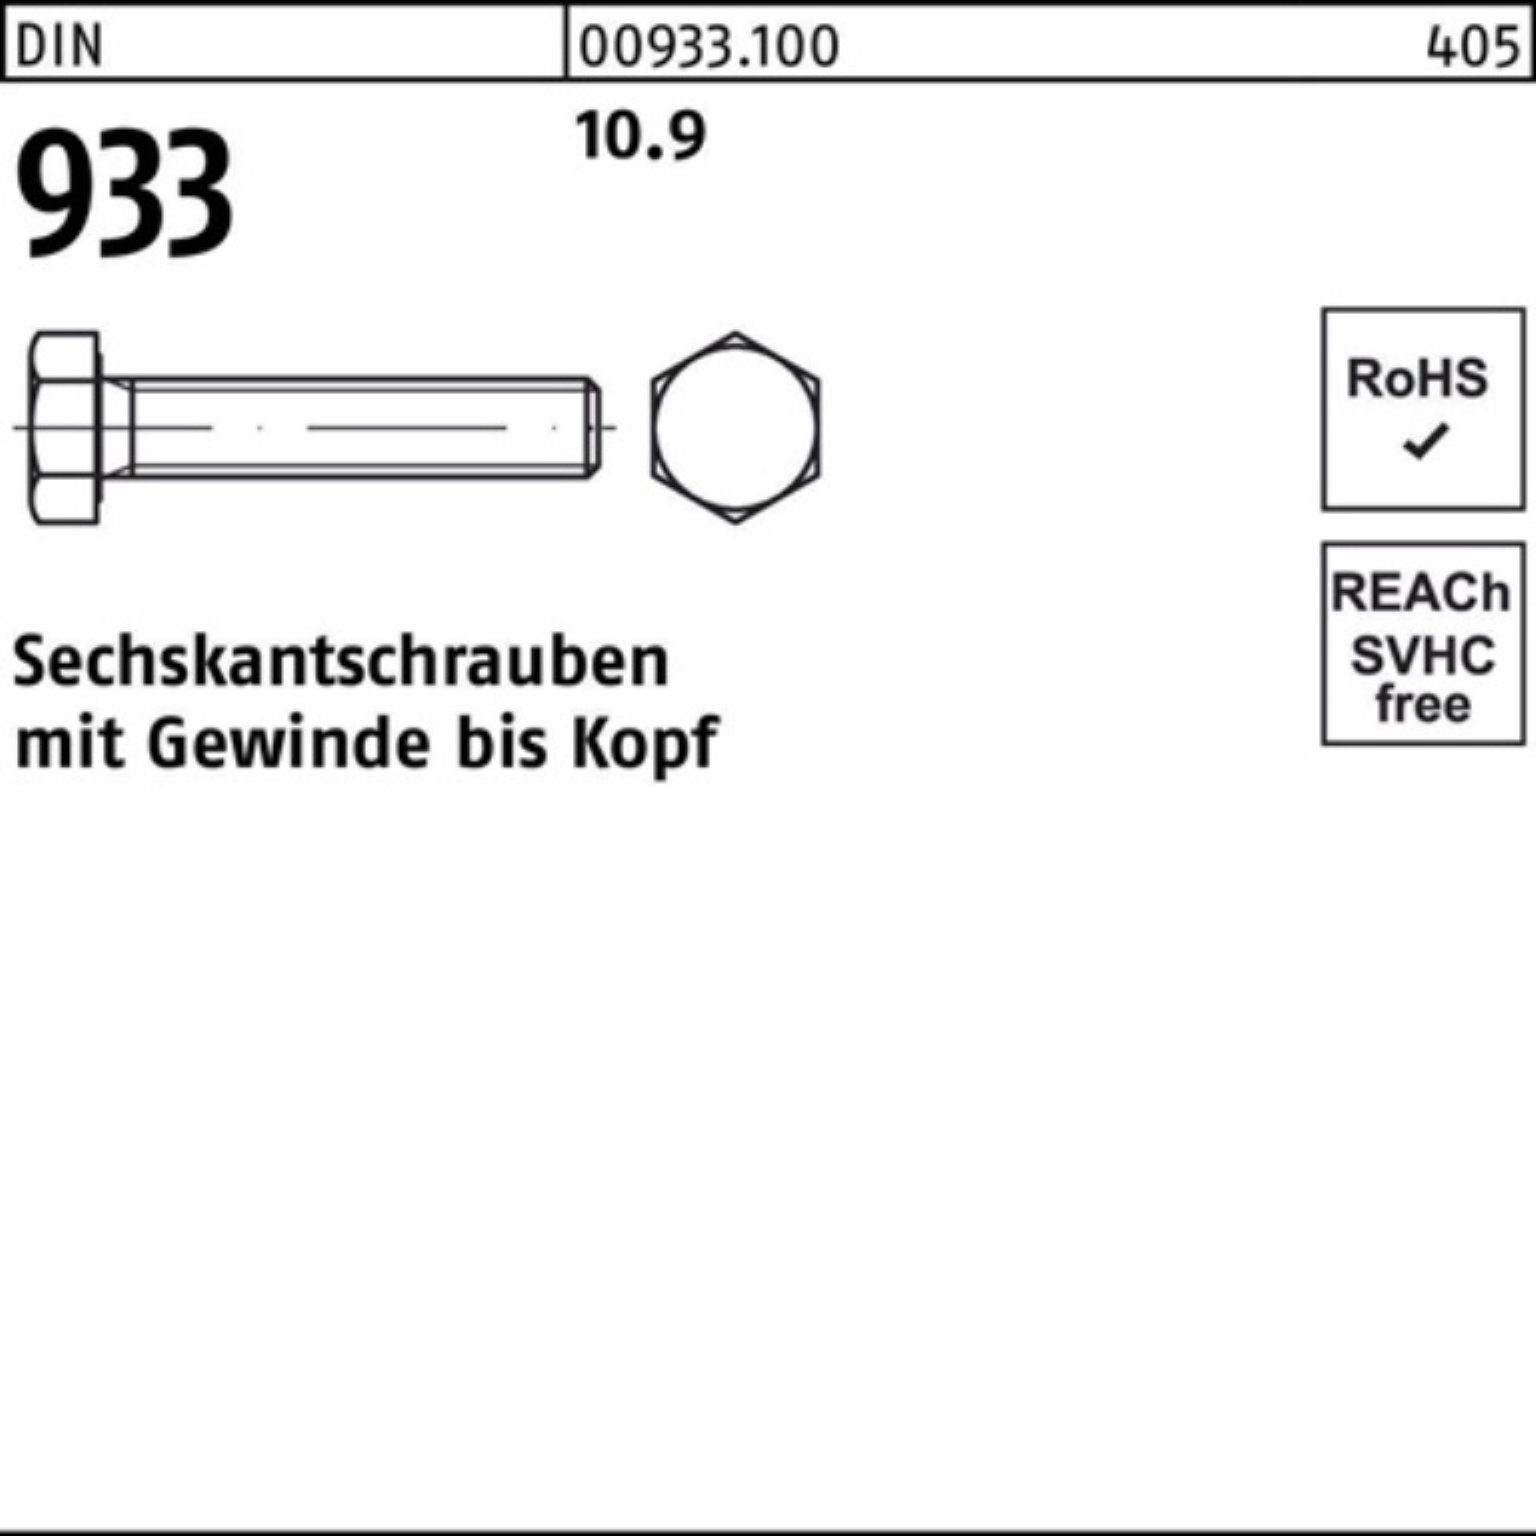 Reyher Sechskantschraube 100er Sechskantschraube Pack 933 10.9 Stück 933 M27x VG 65 DIN 10 DIN